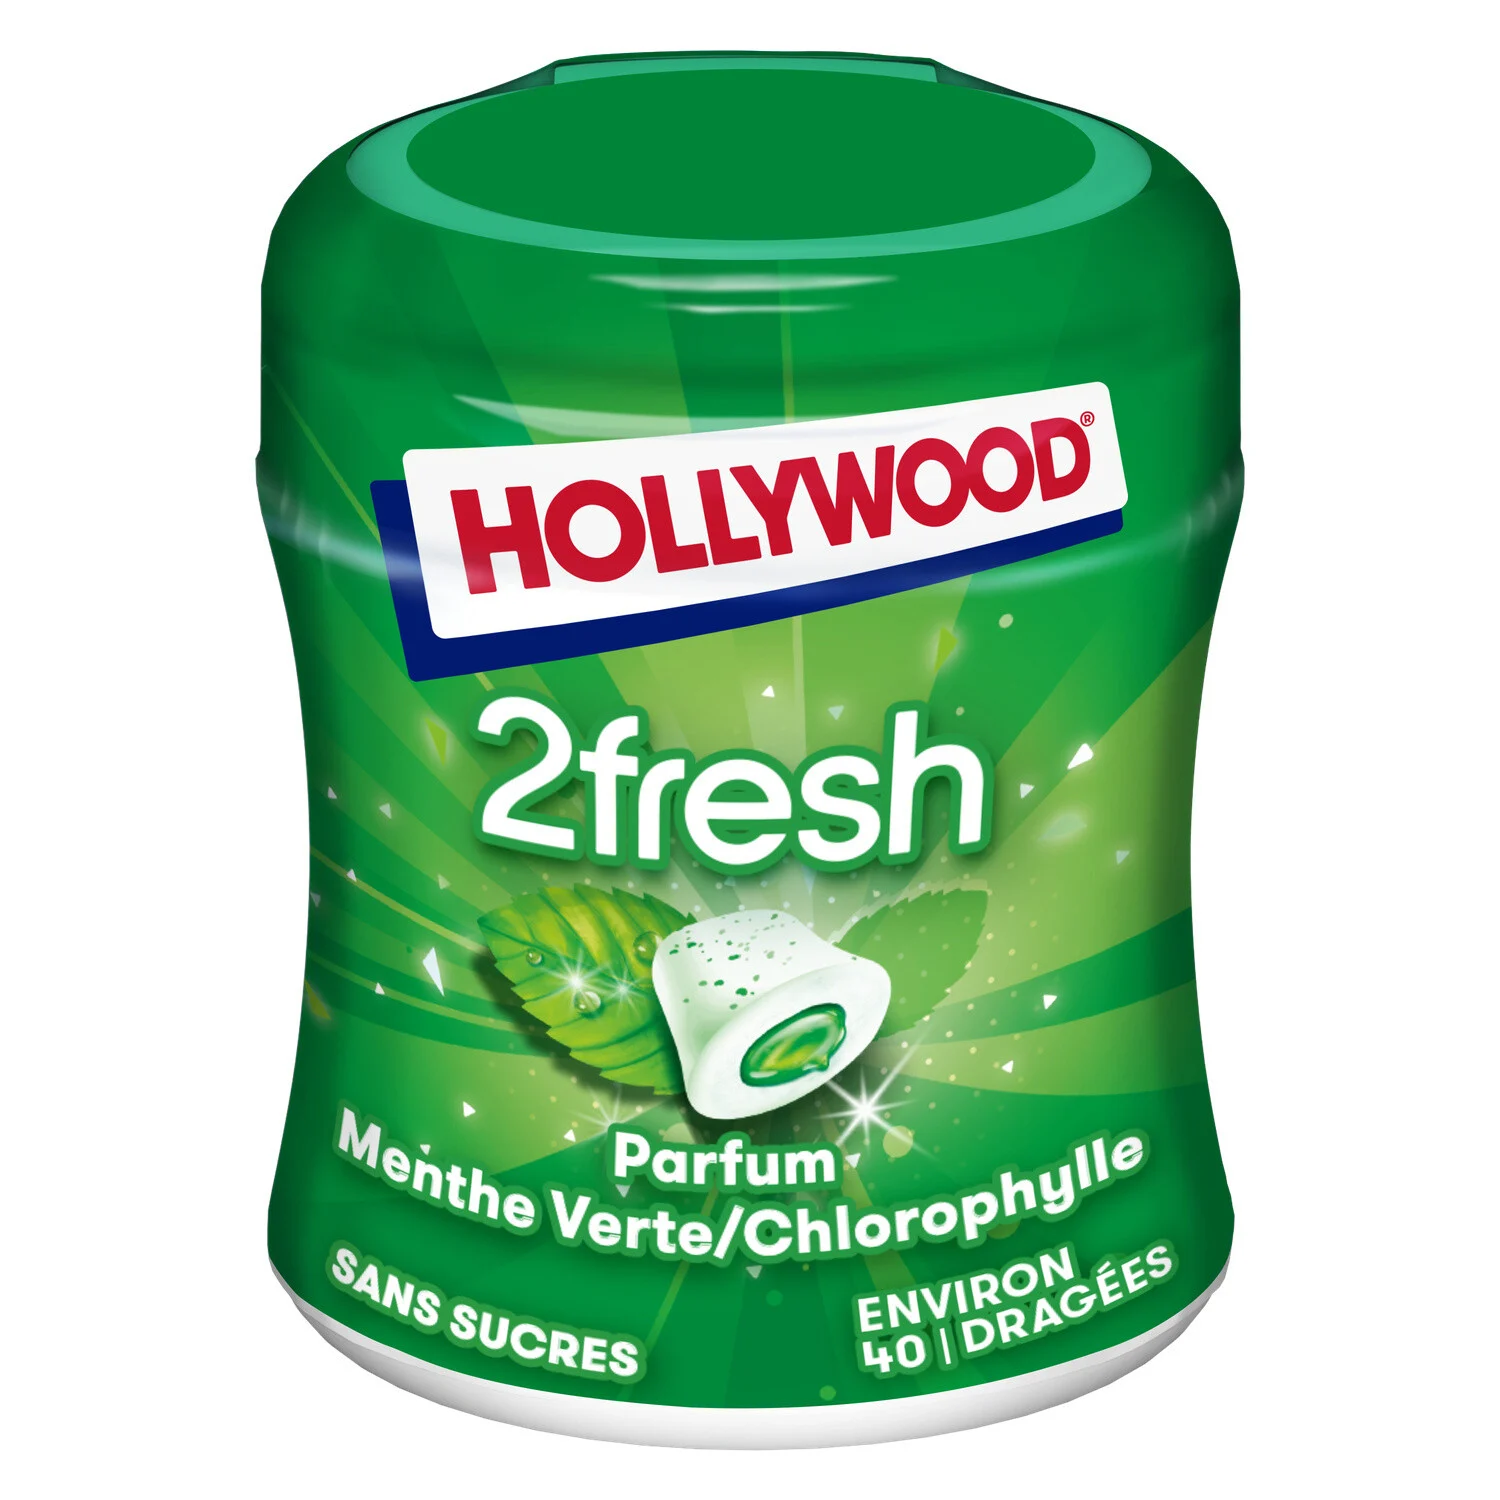 Chewing-gum à La Menthe Verte Sans Sucres 2fresh 88g - Hollywood